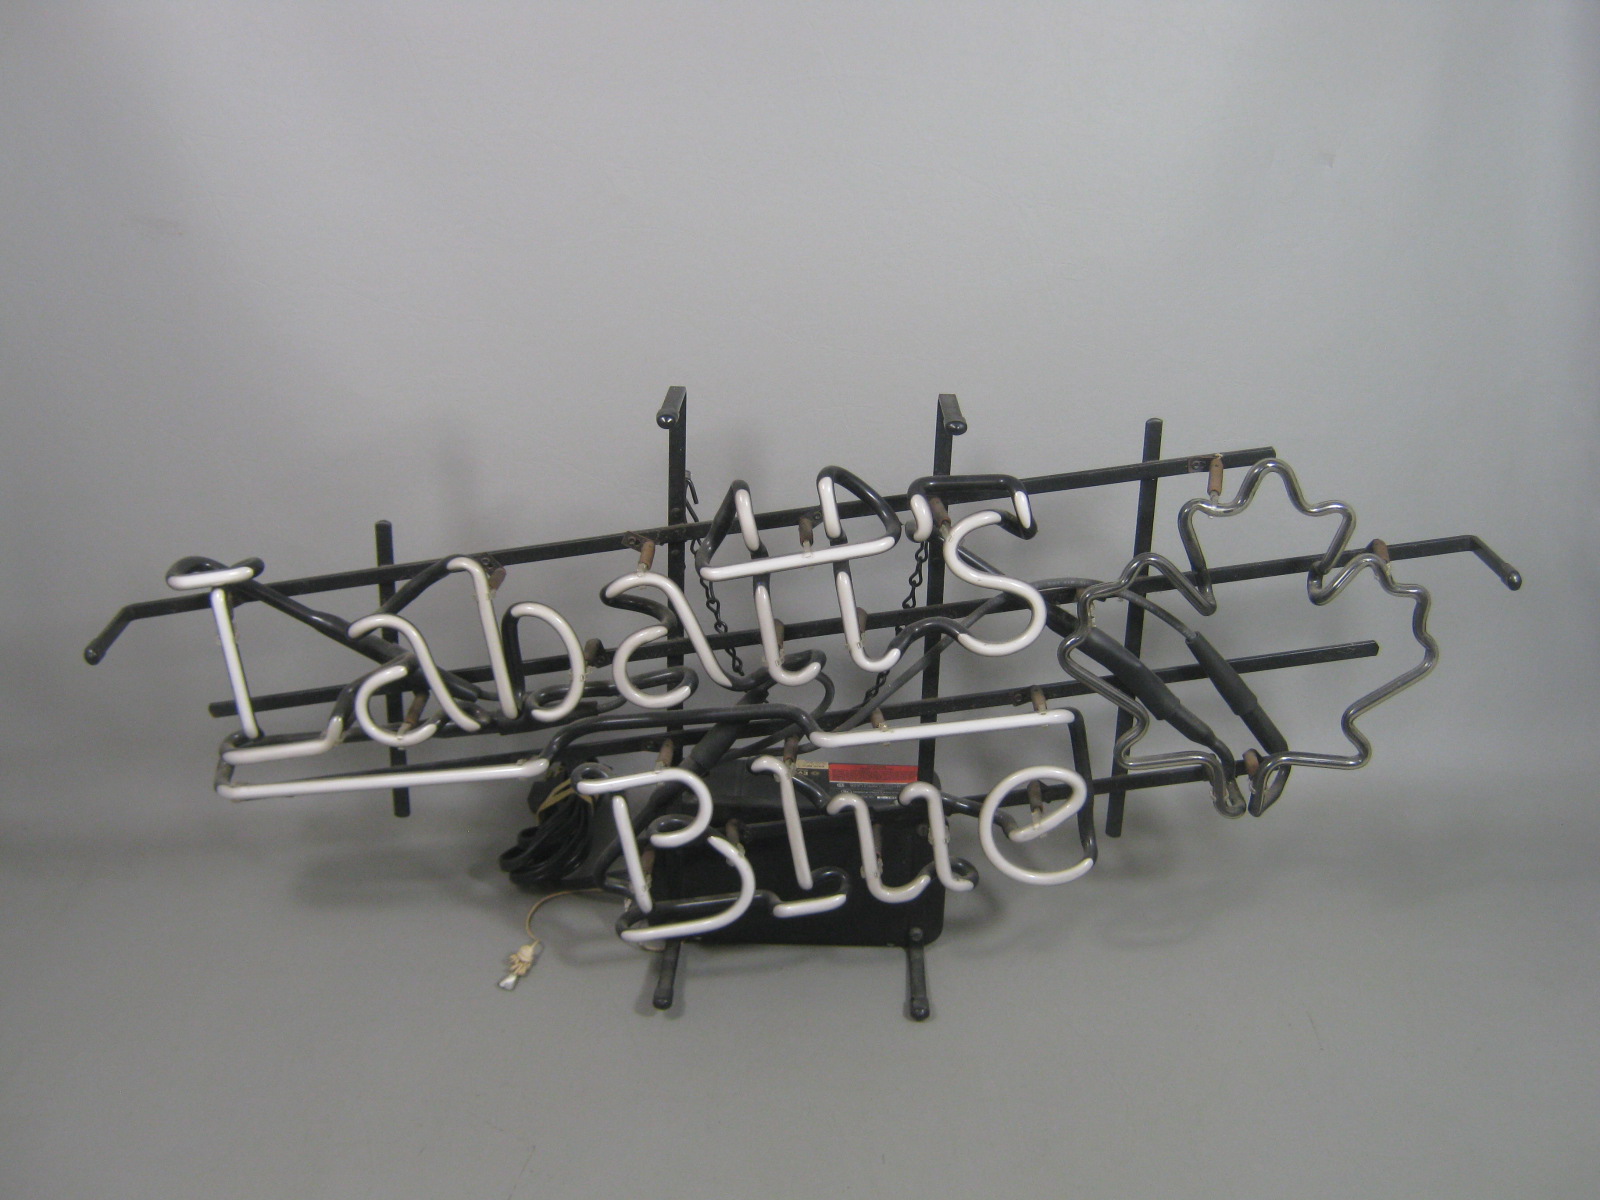 Vtg 1991 Labatts Blue Beer Advertising Electric Neon Light Bar Sign + Maple Leaf 1